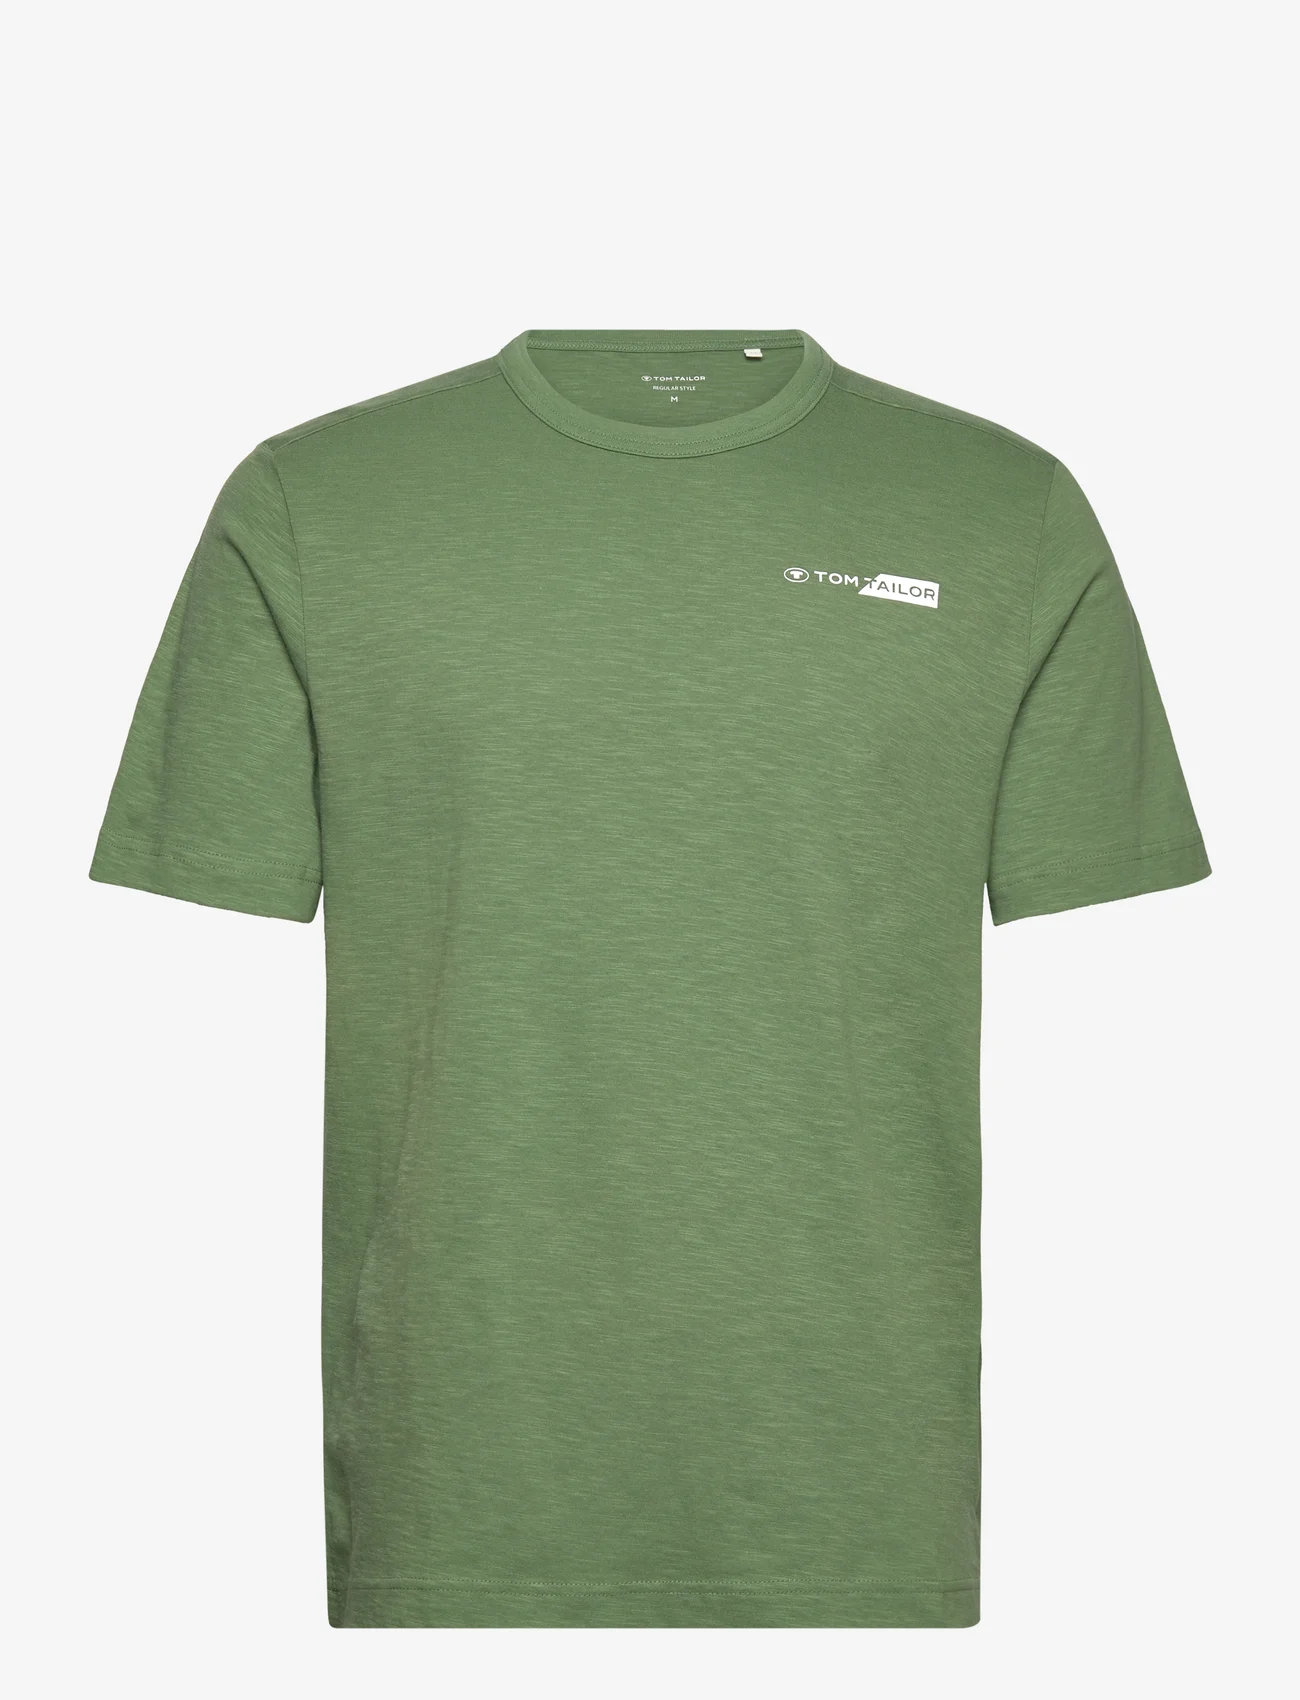 Tom Tailor - printed t-shirt - mažiausios kainos - dull moss green - 0